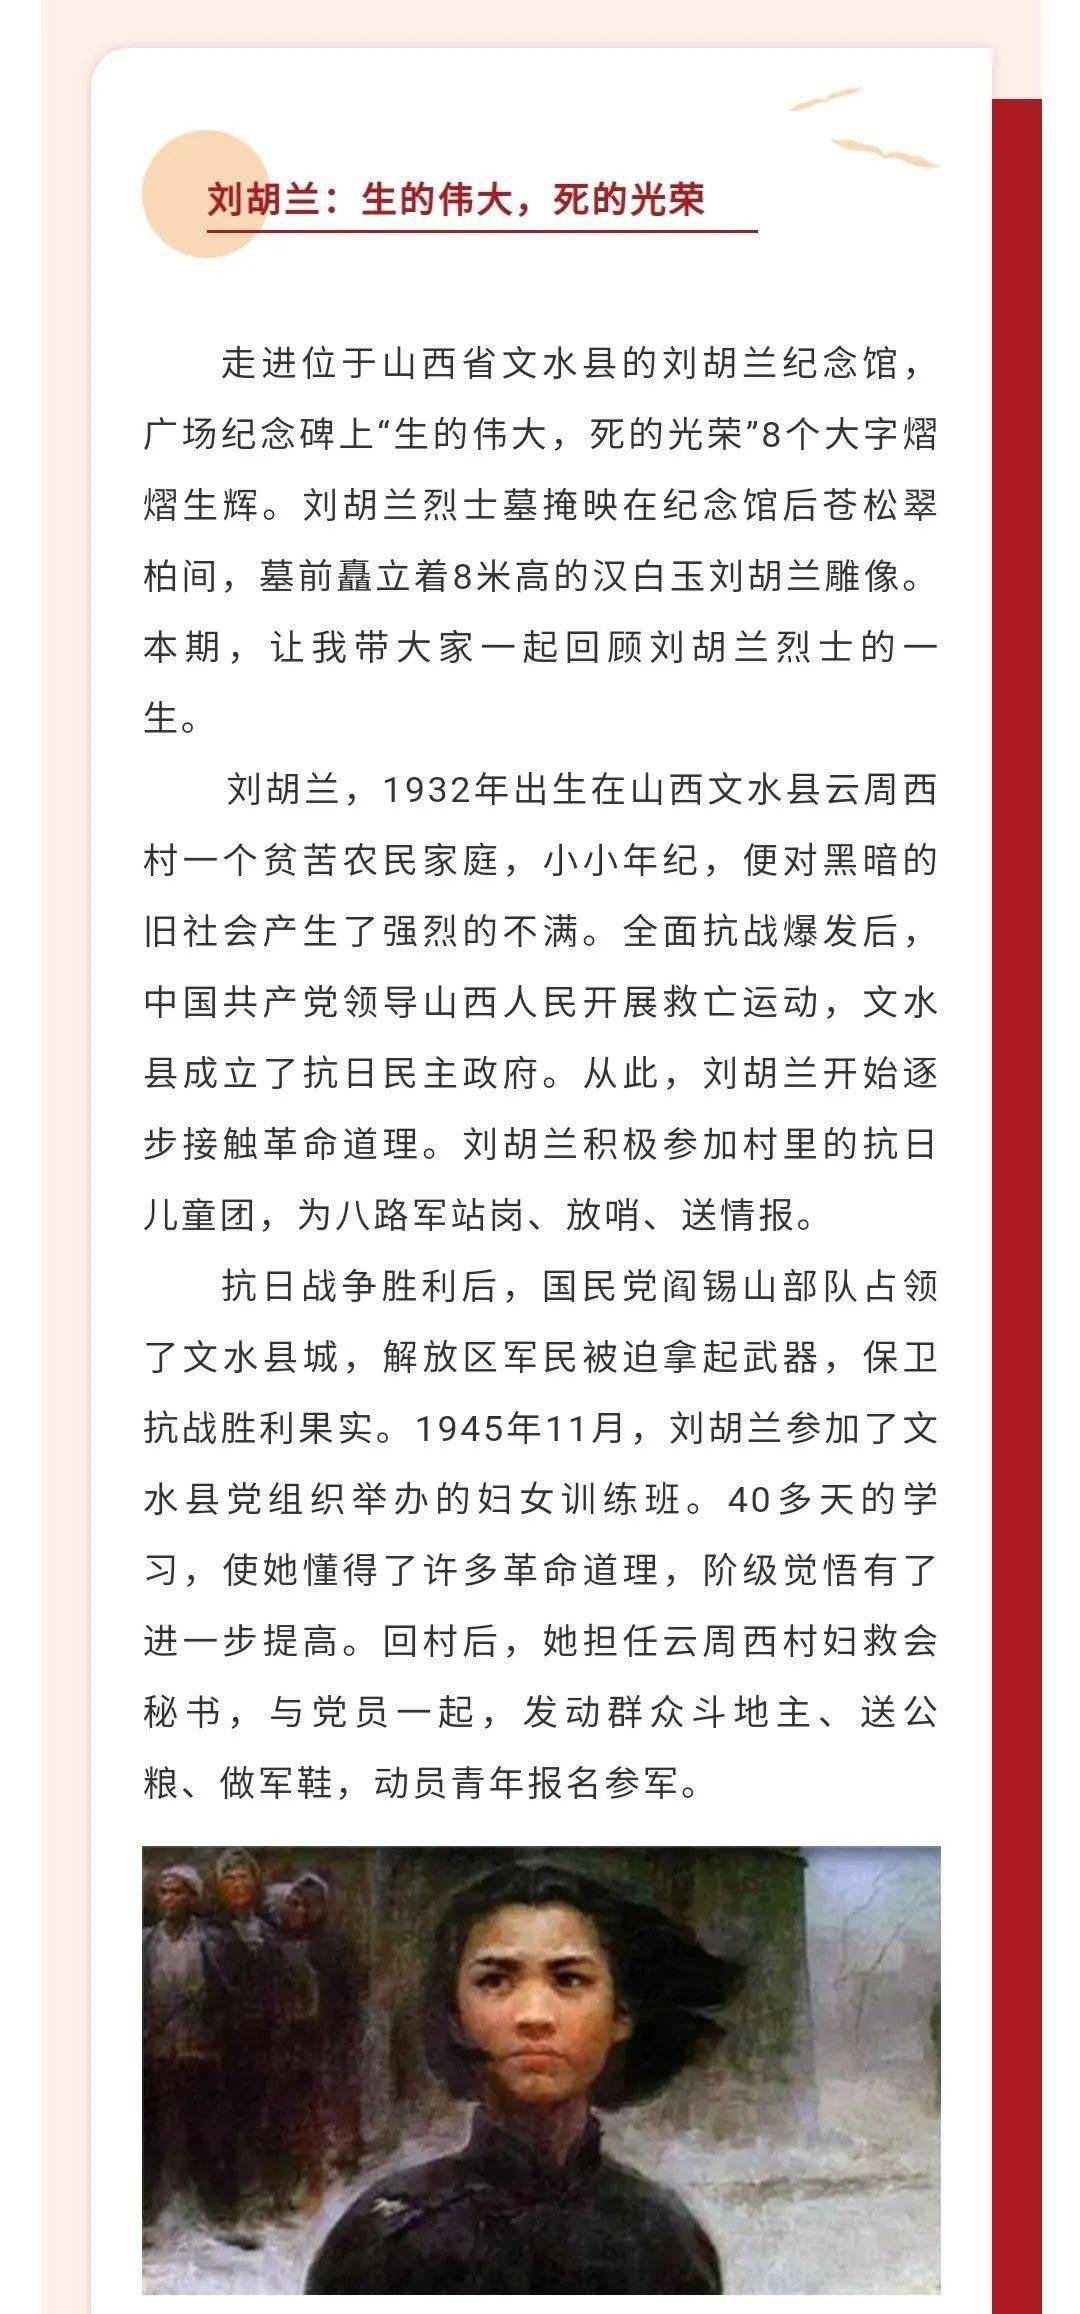 水乡组工党建电台第16期组工干部读党史刘胡兰生的伟大死的光荣